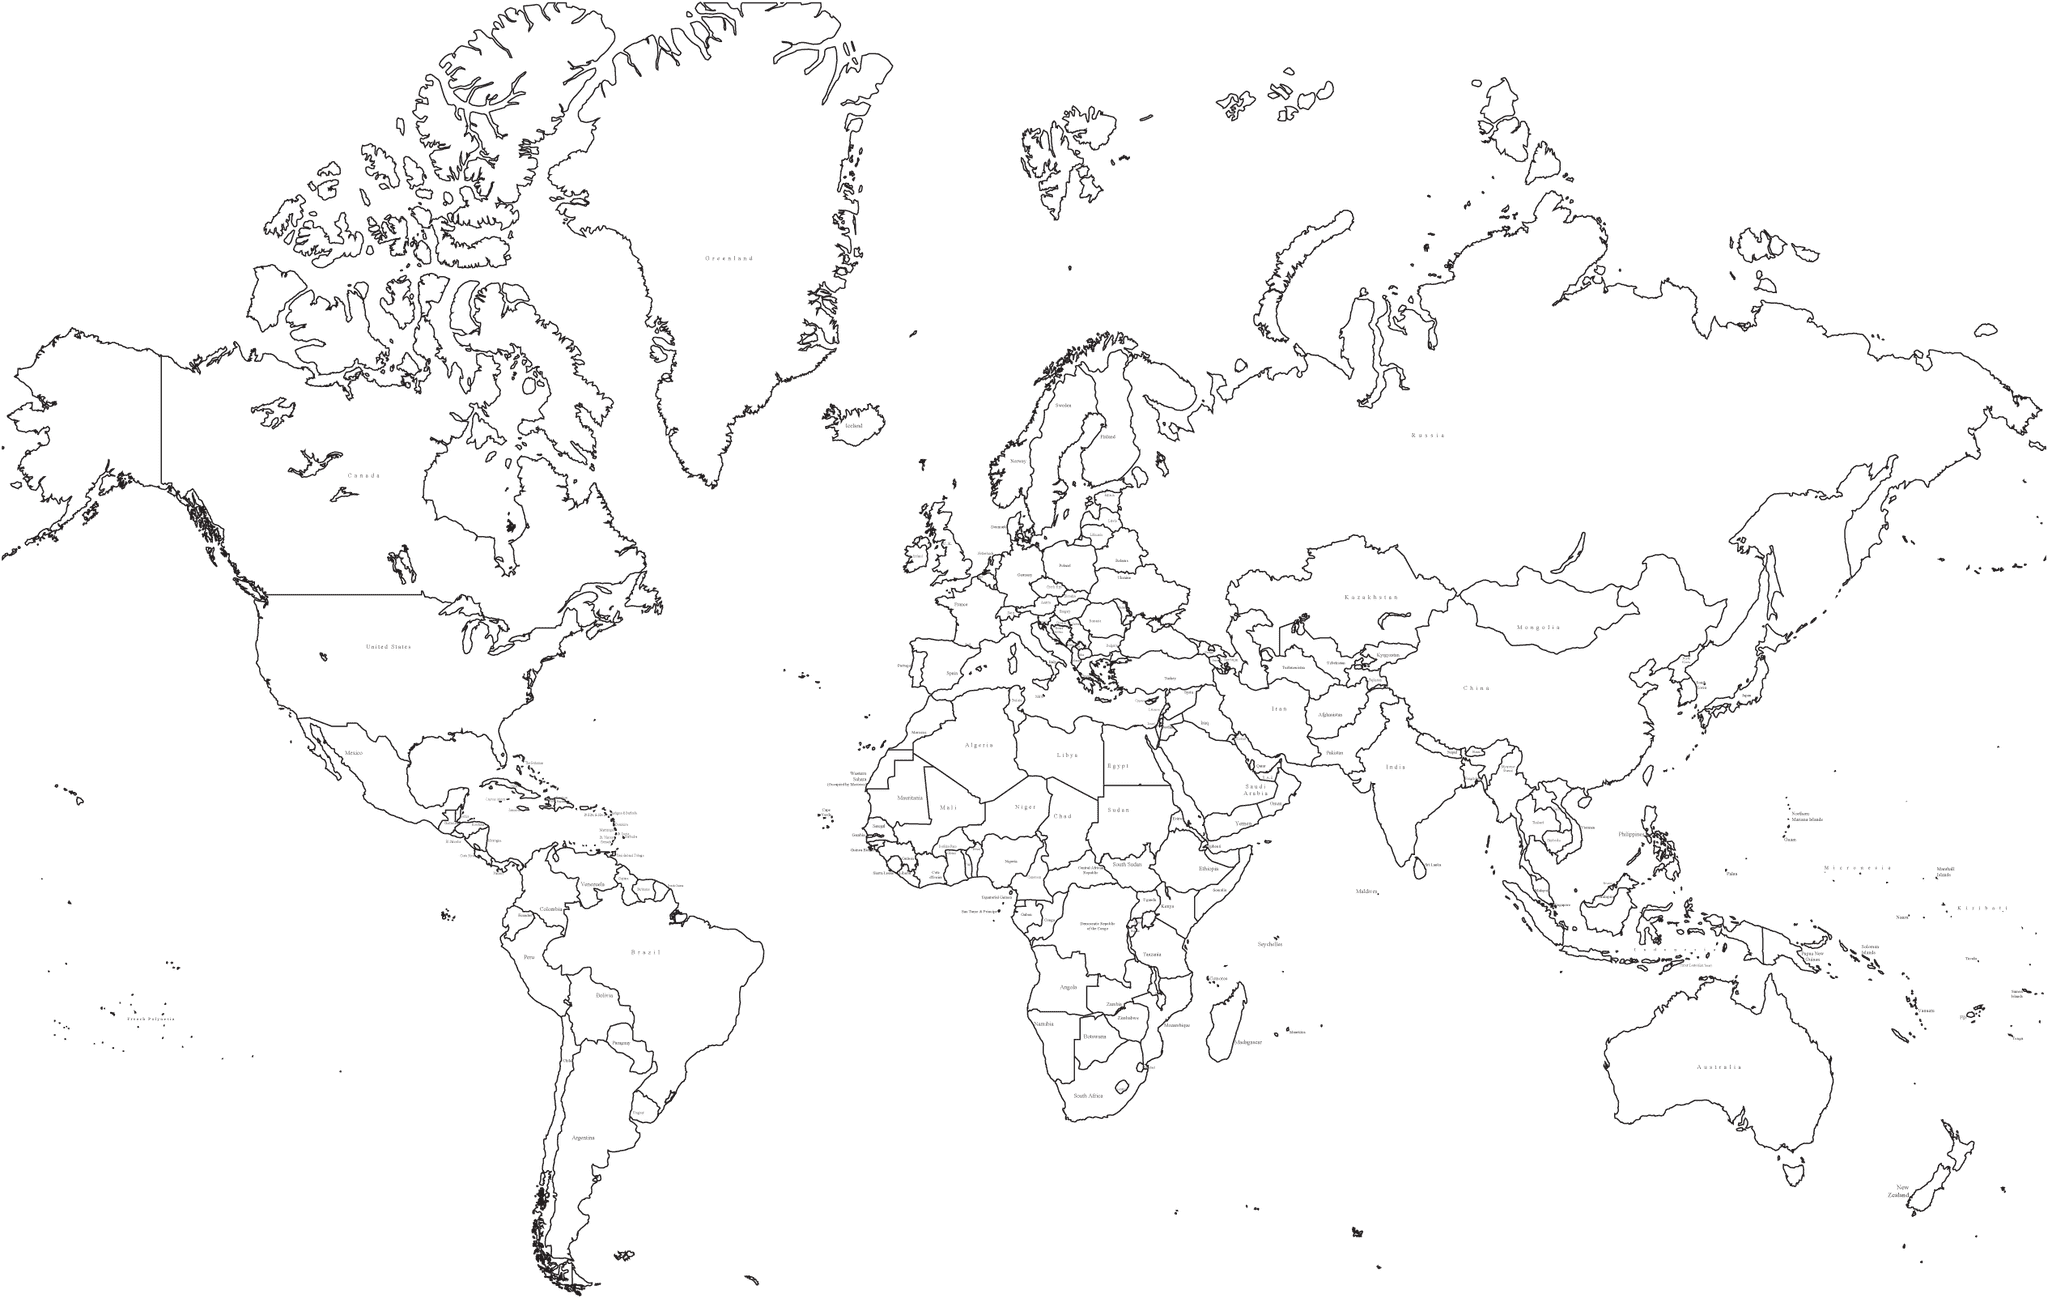 35 x 22 inch black and white world map mercator